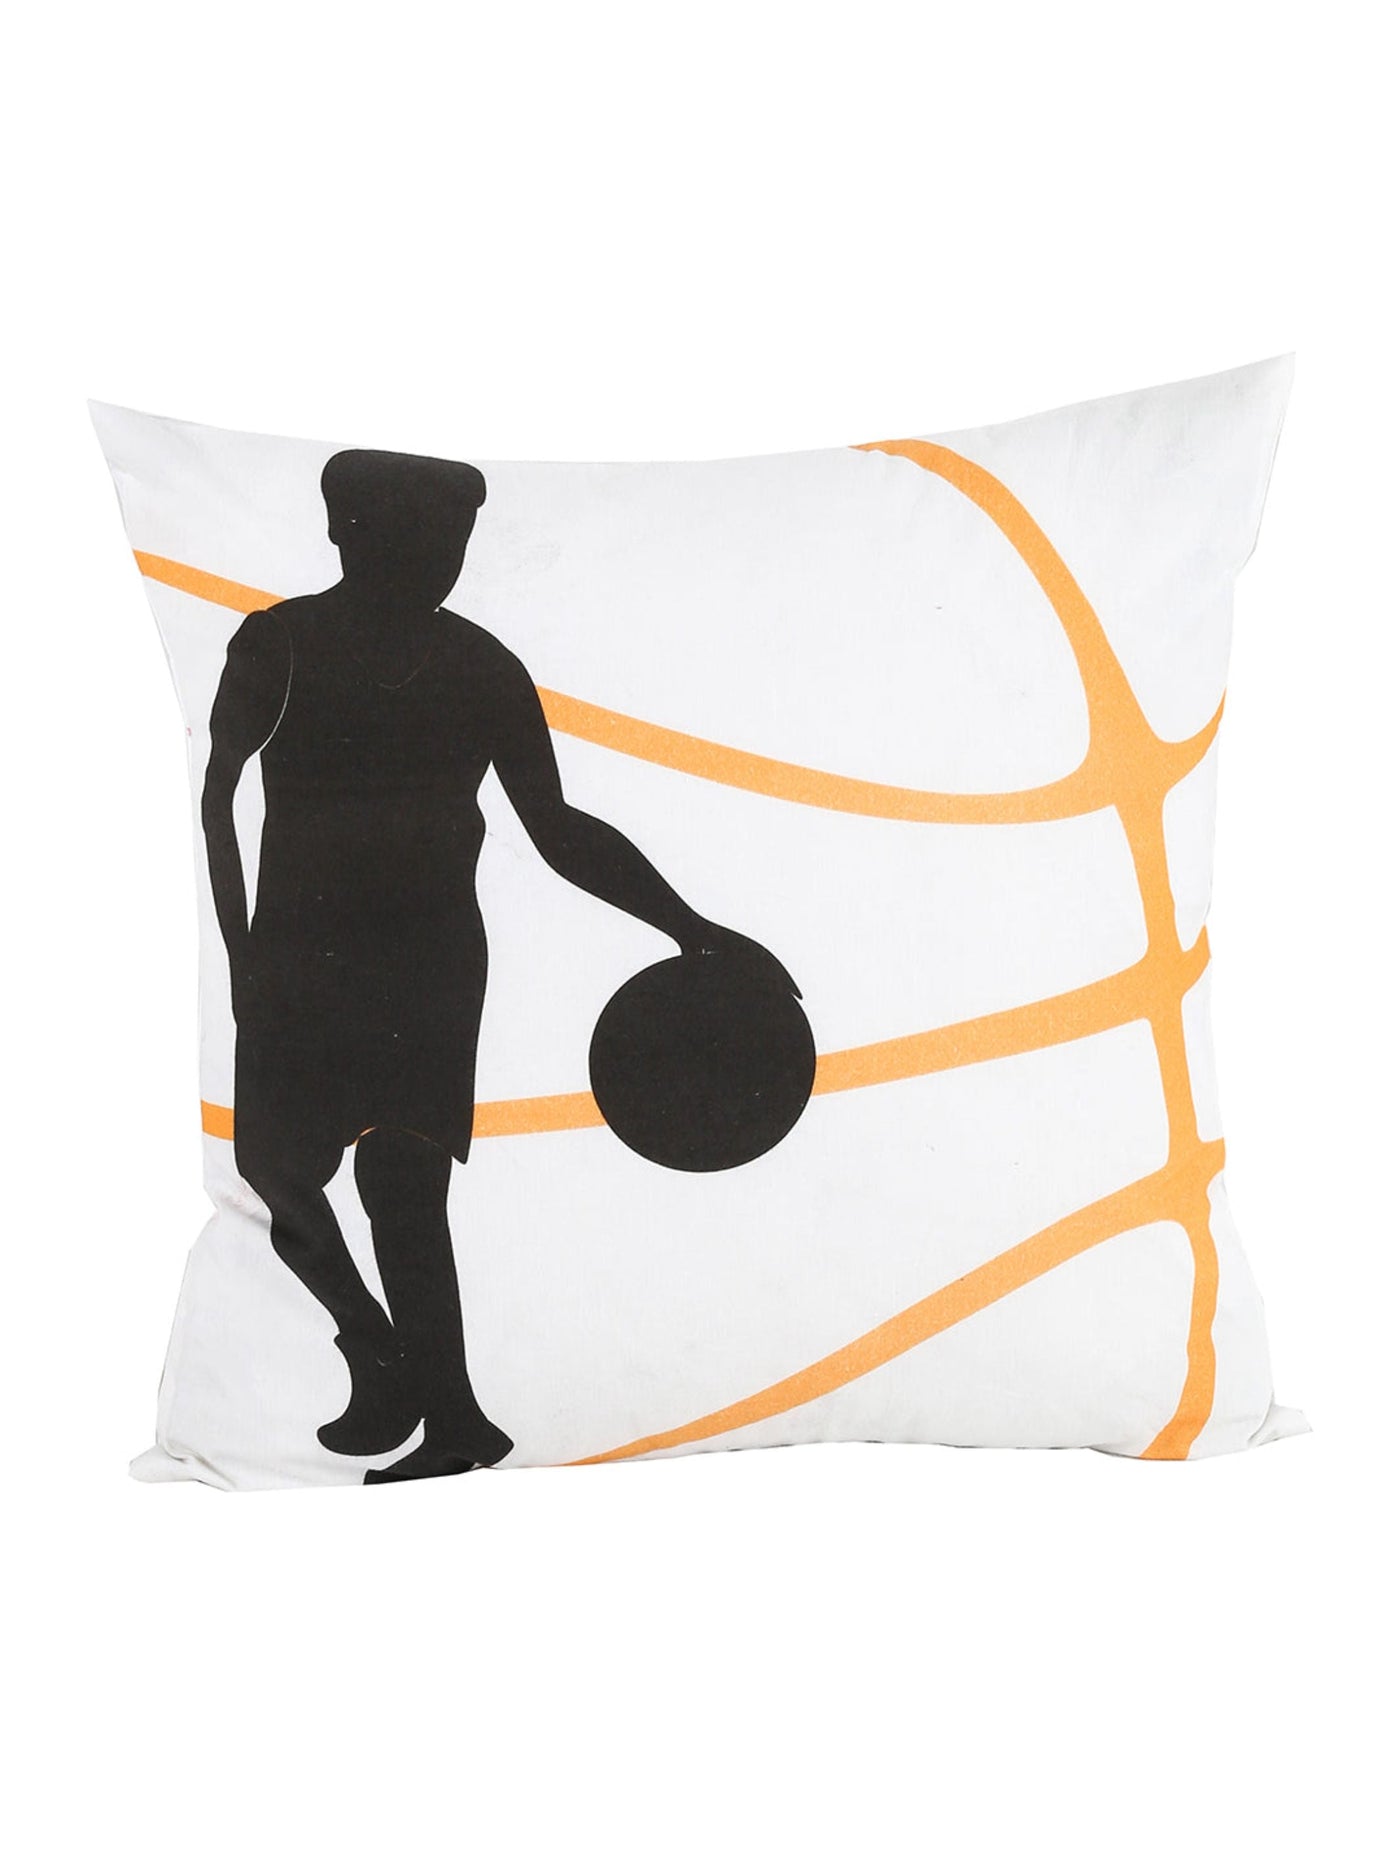 Basket Ball Cushion Cover